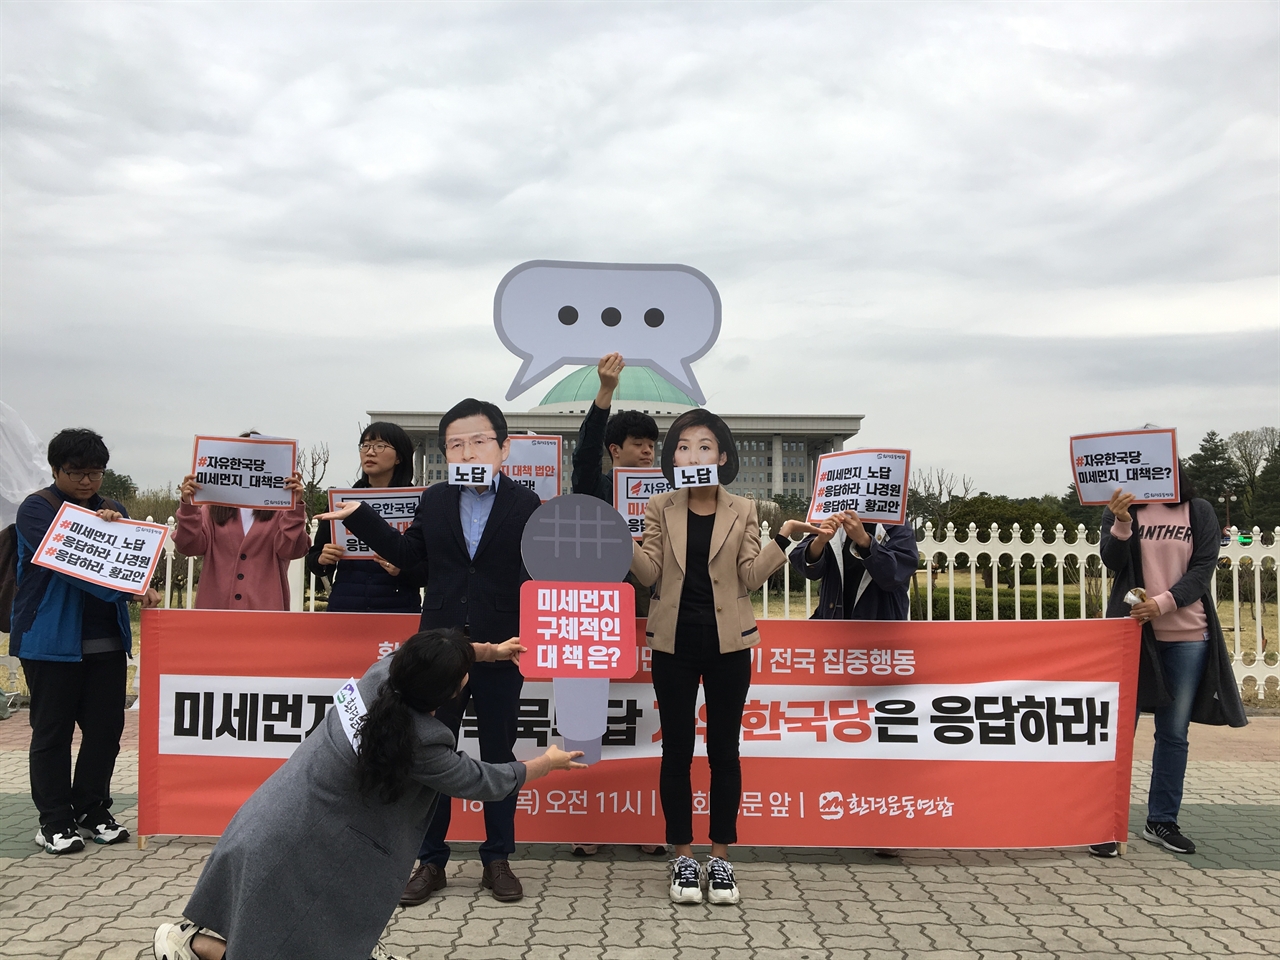 18일, 환경단체가 국회 앞에서 기자회견을 열고 미세먼지 정책 제안에 묵묵부답한 자유한국당을 향해  비판의 목소리를 높였다.